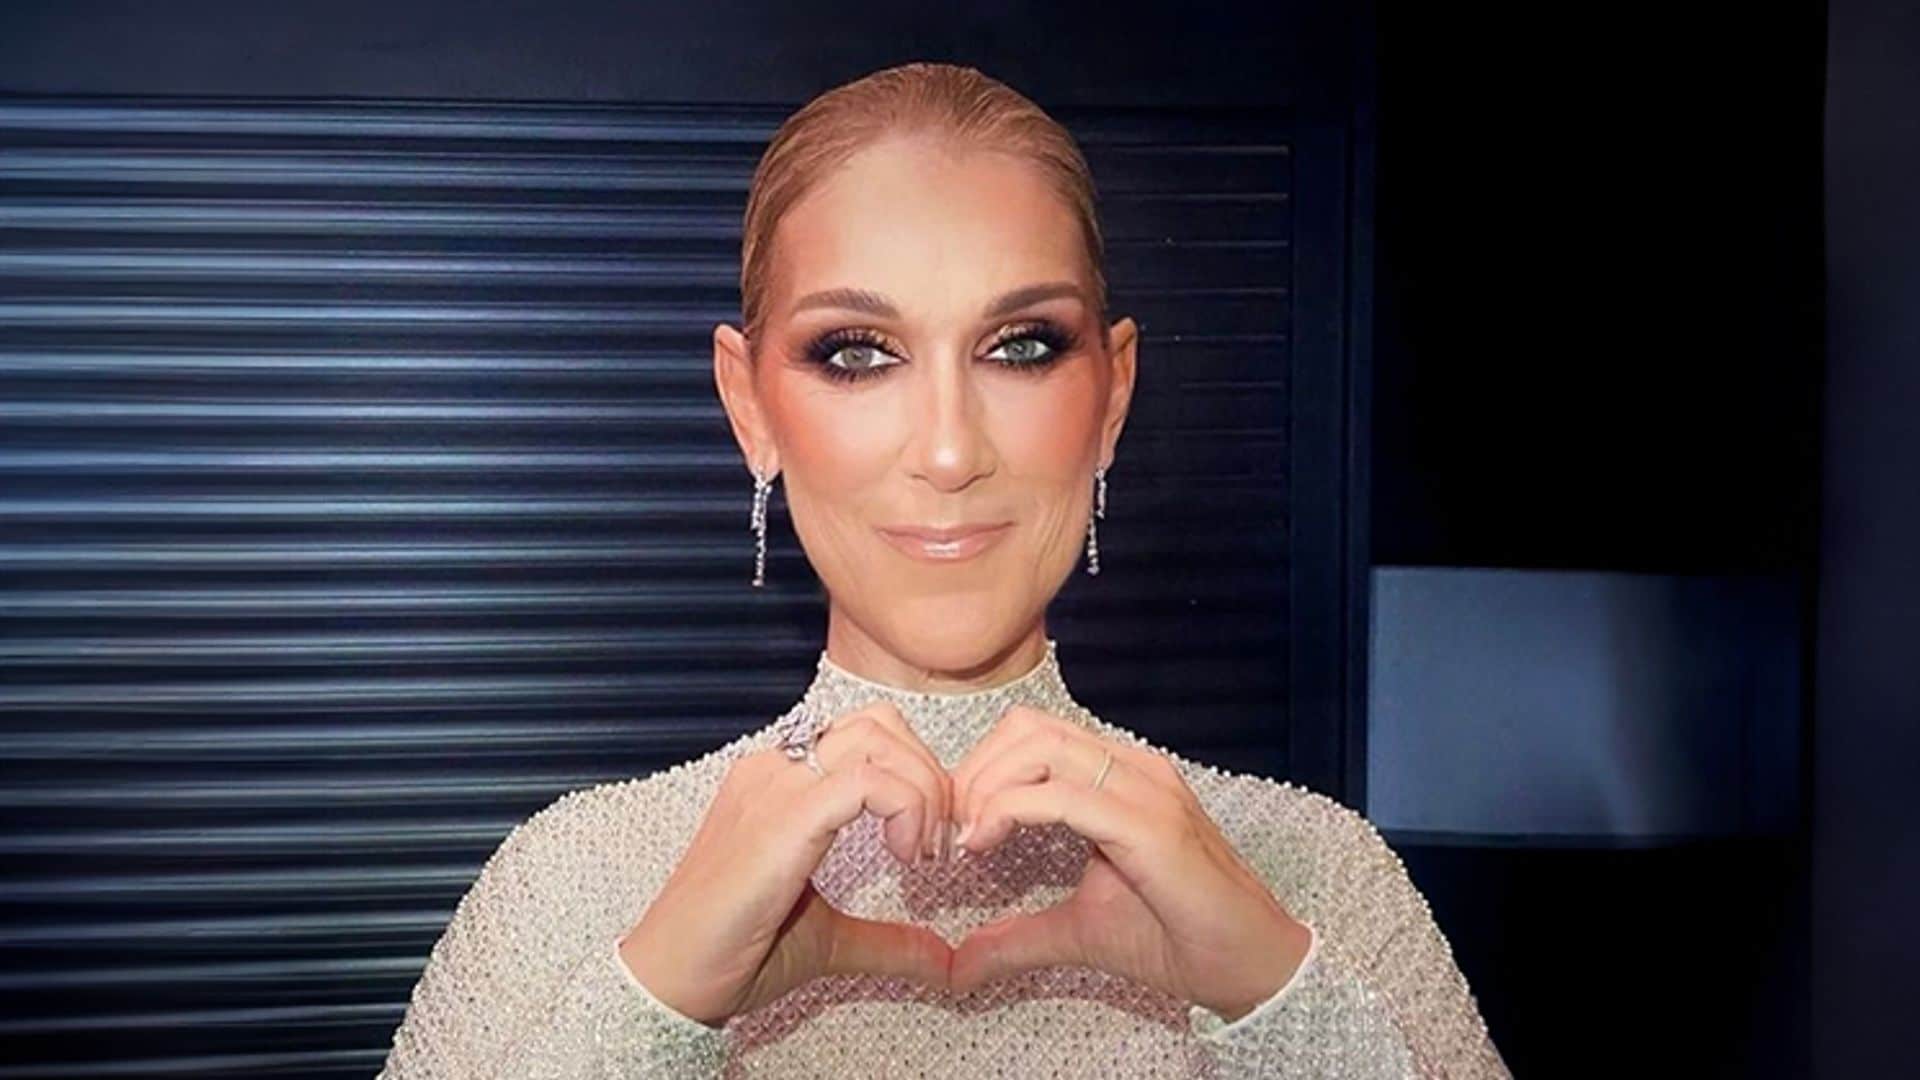 Las emocionantes palabras de Celine Dion tras su épica actuación en París a pesar de su enfermedad: ‘Mi corazón está con vosotros’